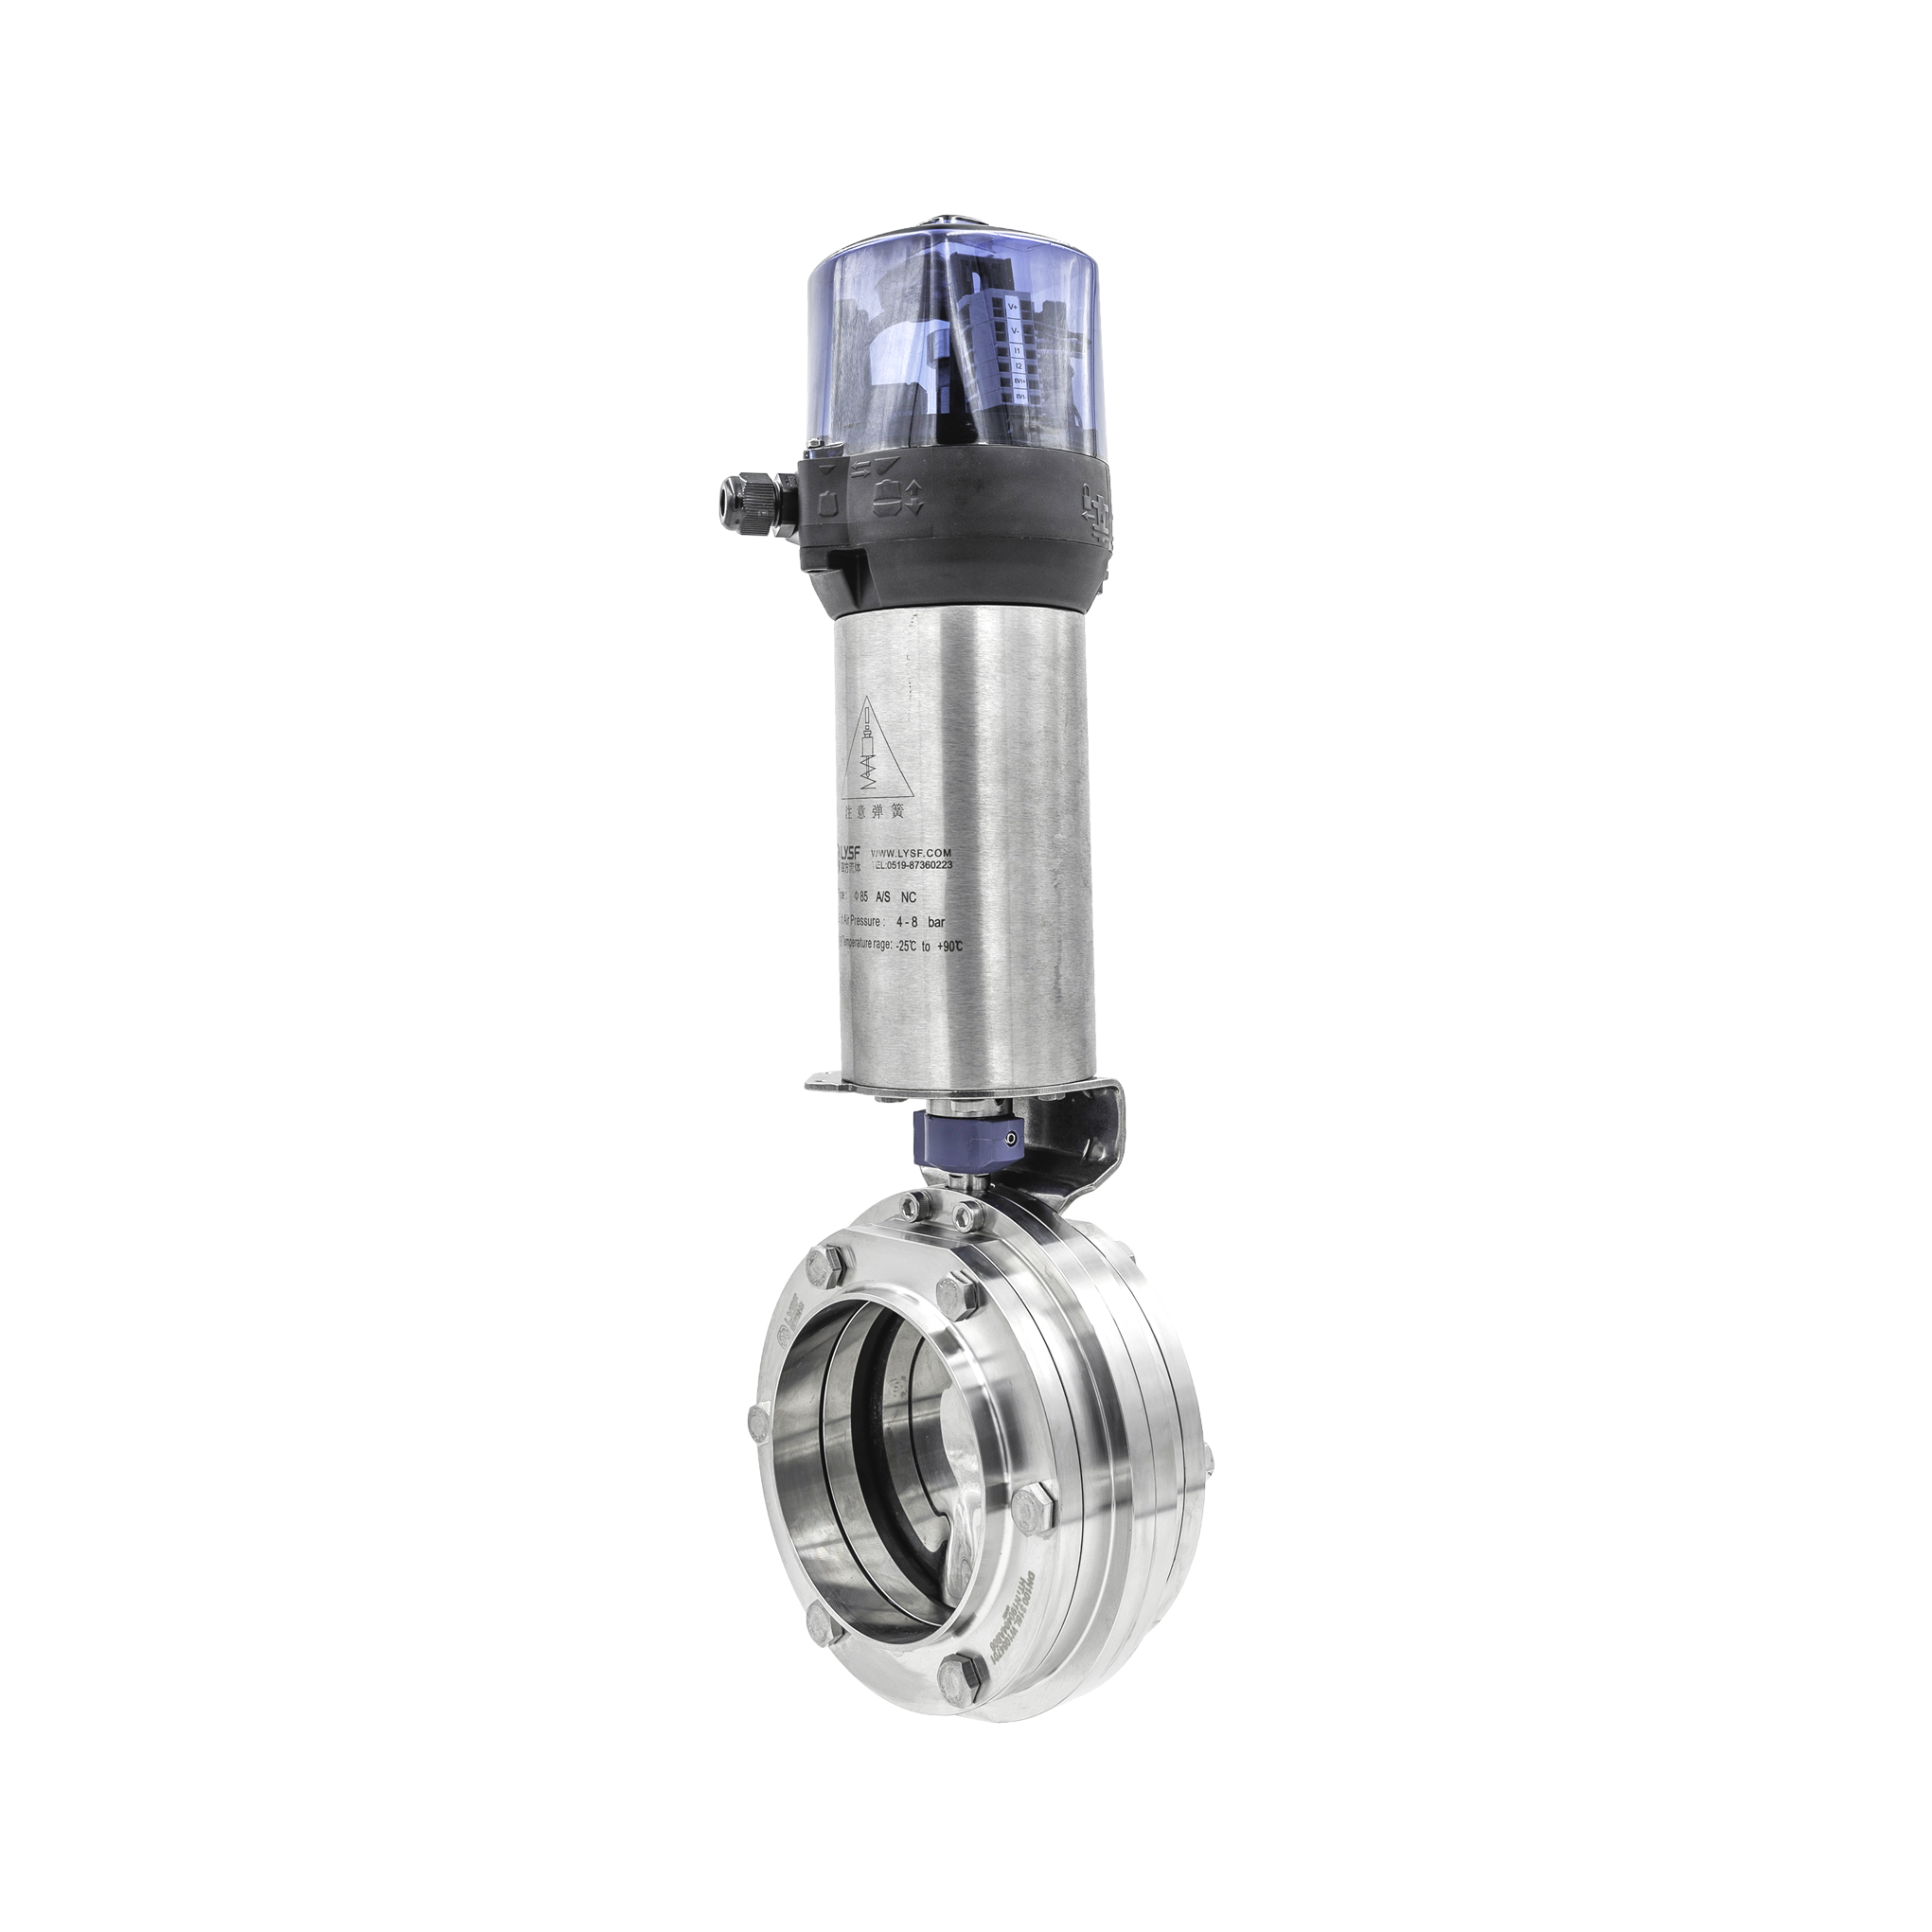 Vertical pneumatic butterfly valve